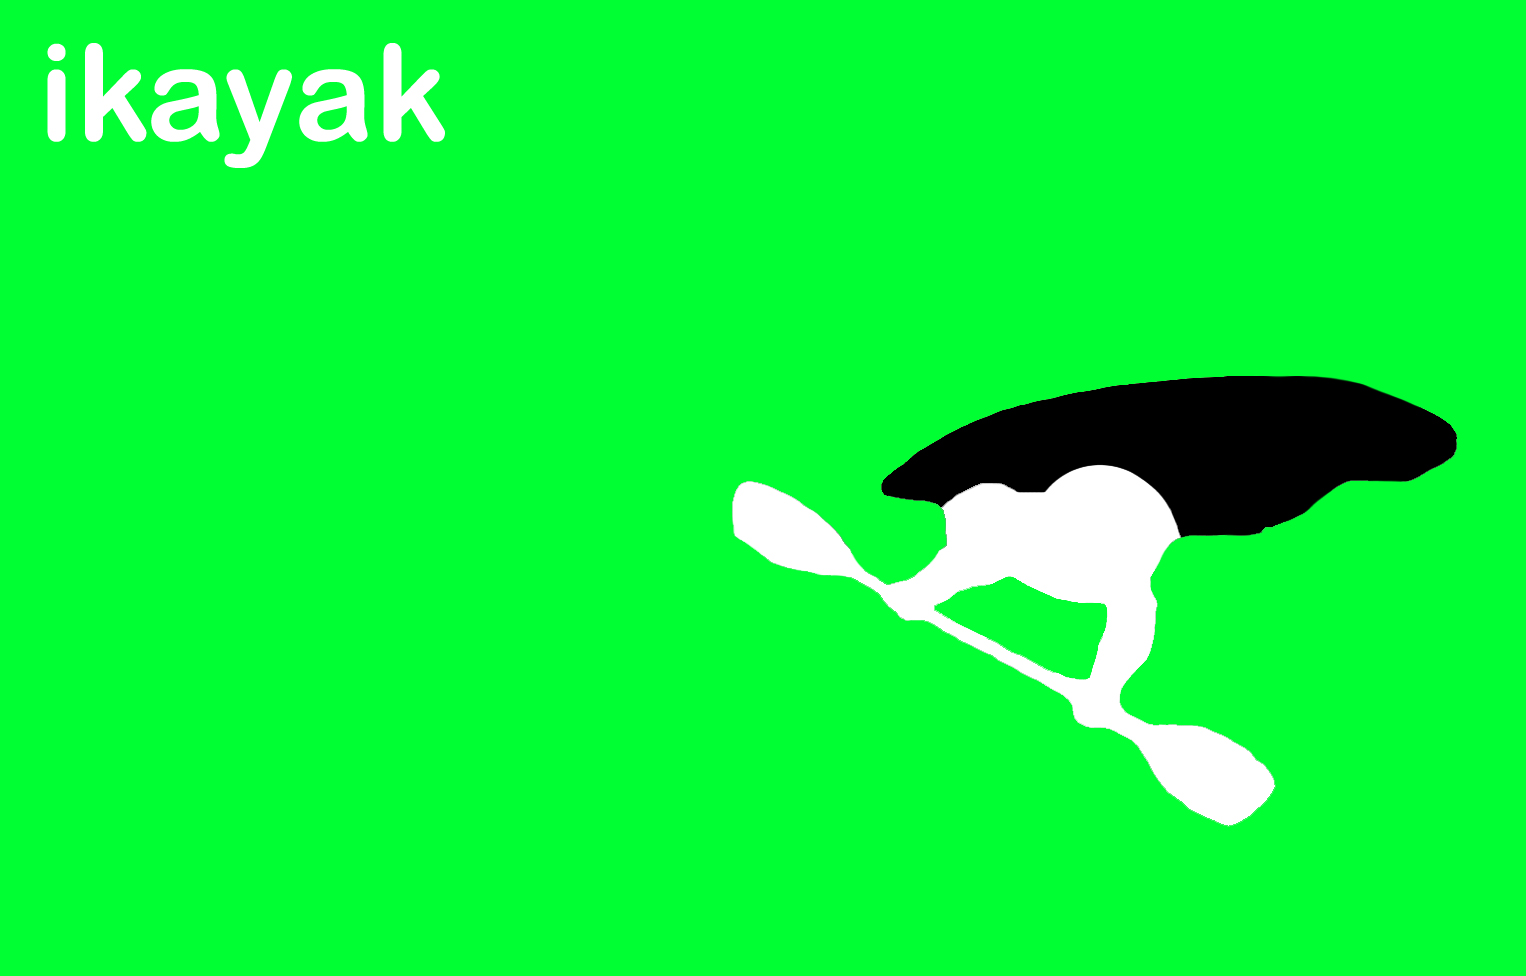 [i_kayak_graphic.jpg]